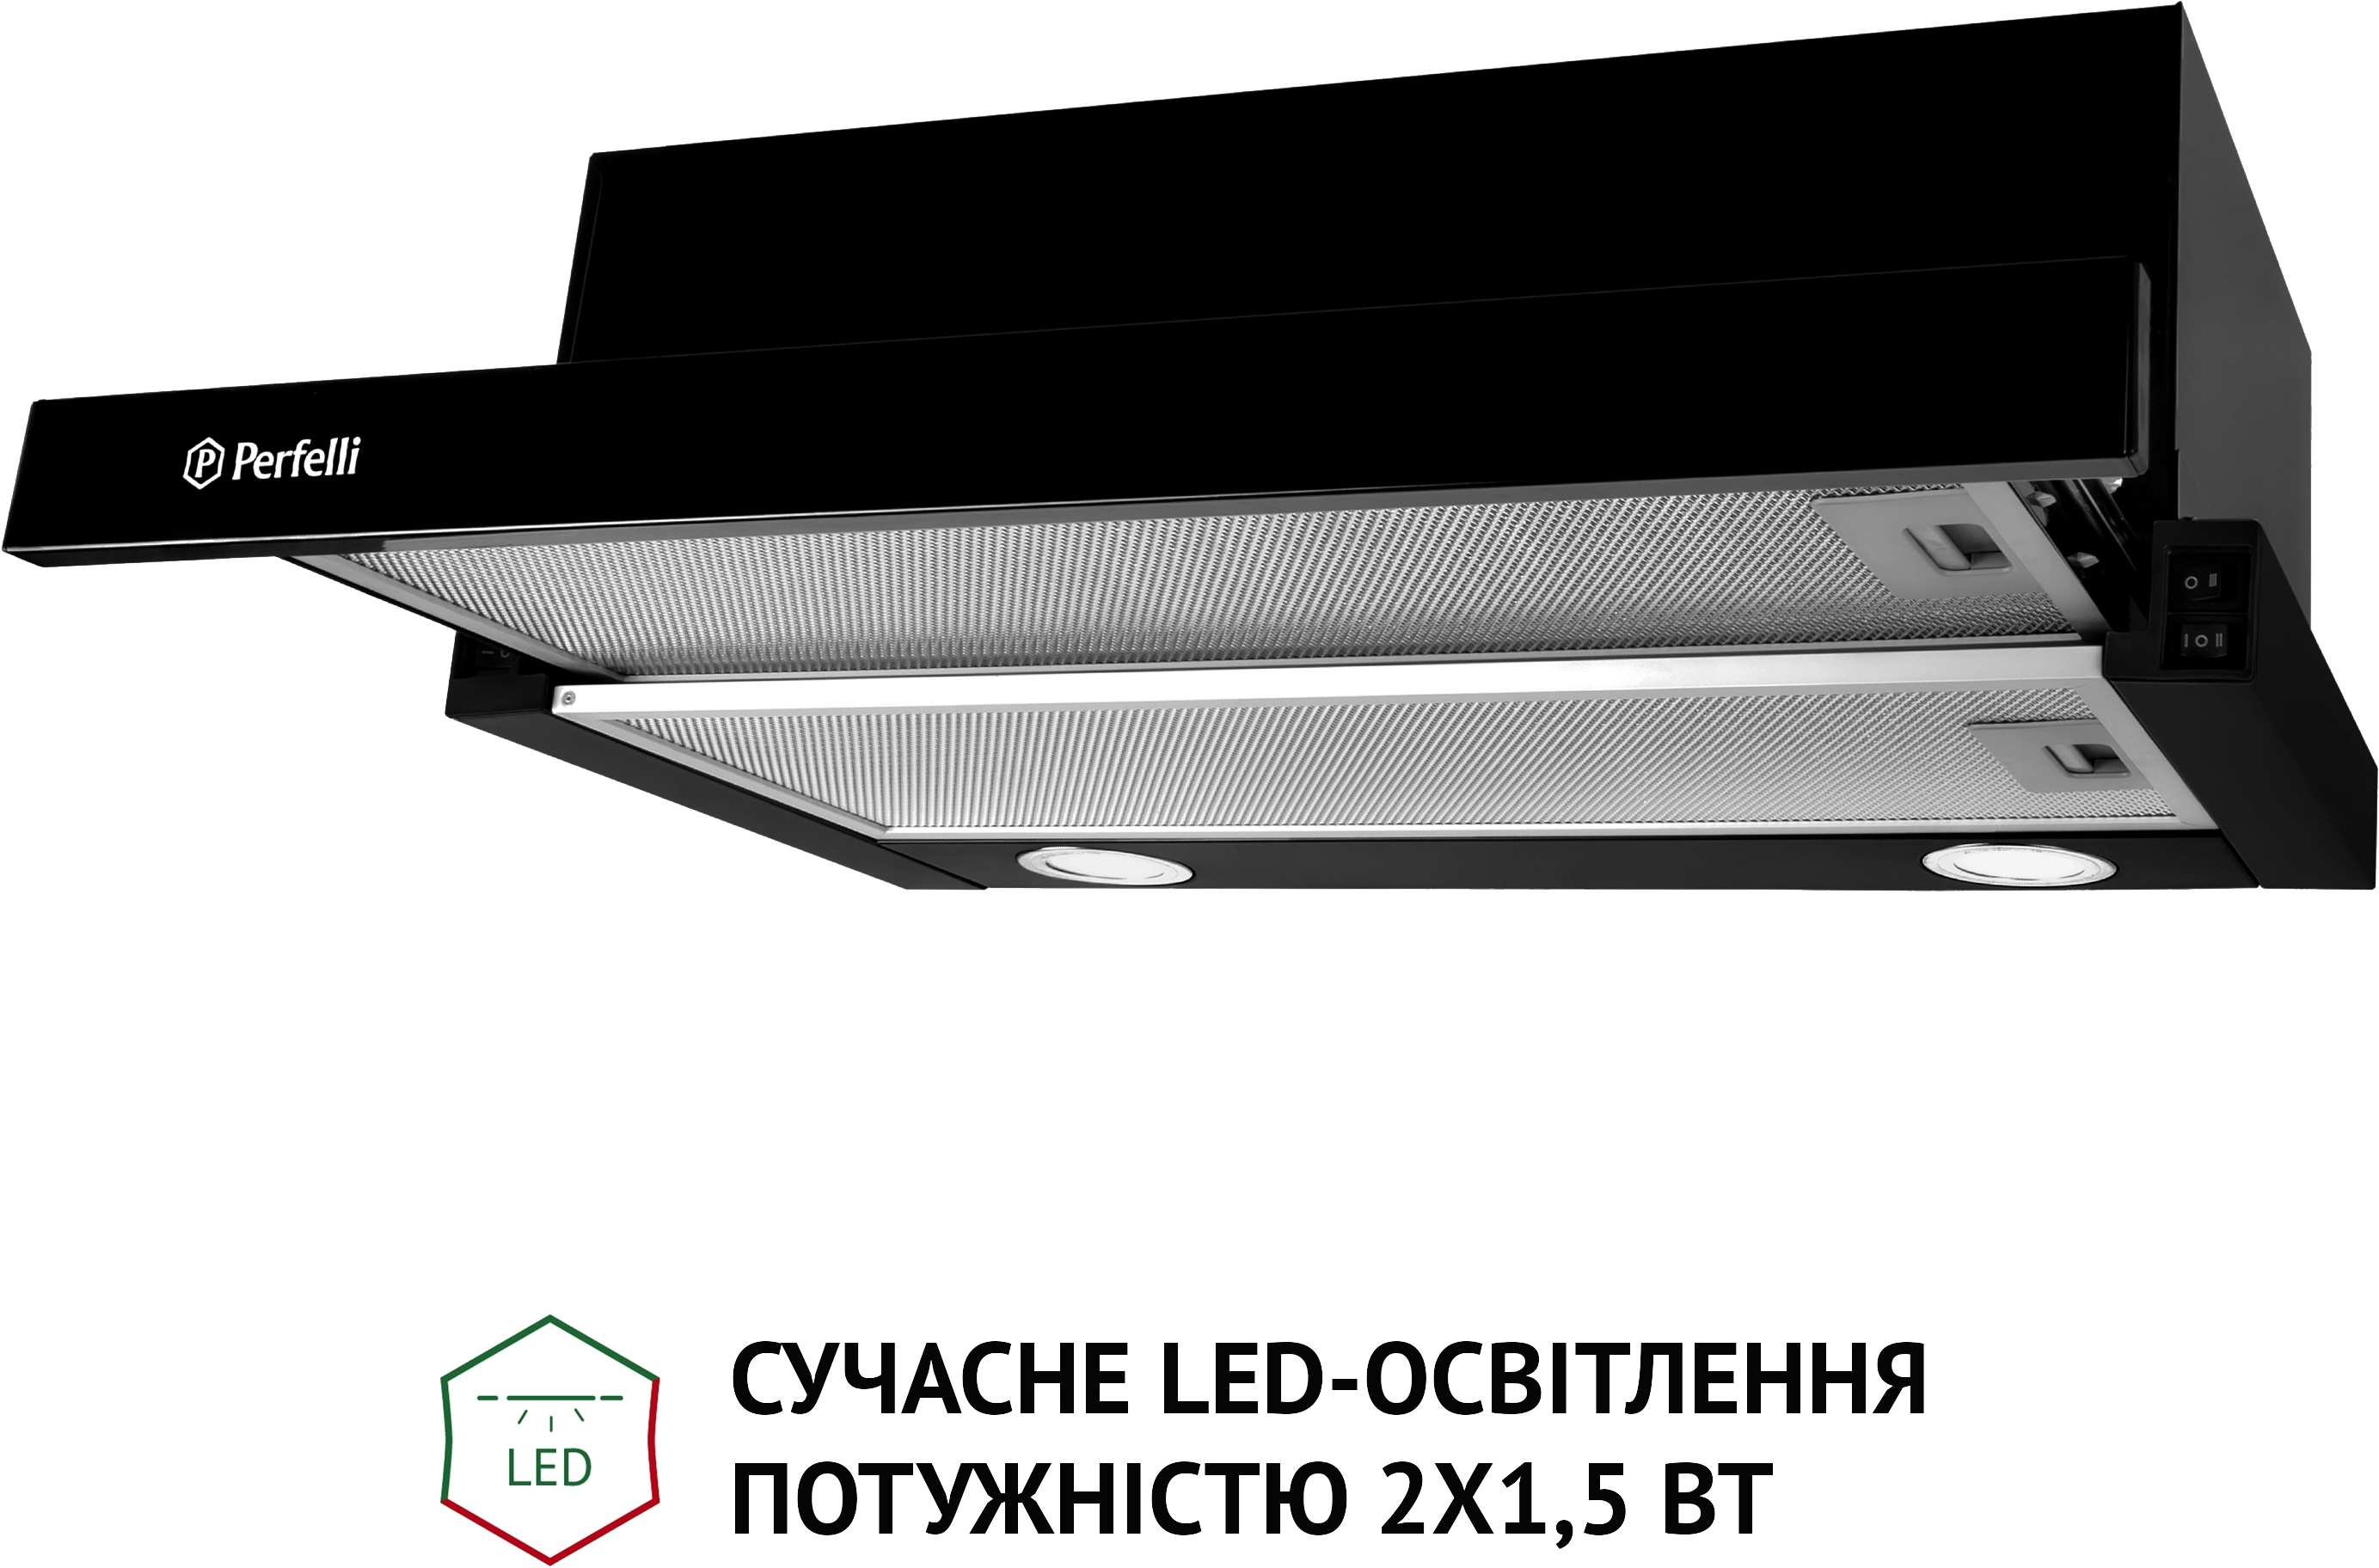 продаём Perfelli TL 5212 BL 700 LED в Украине - фото 4